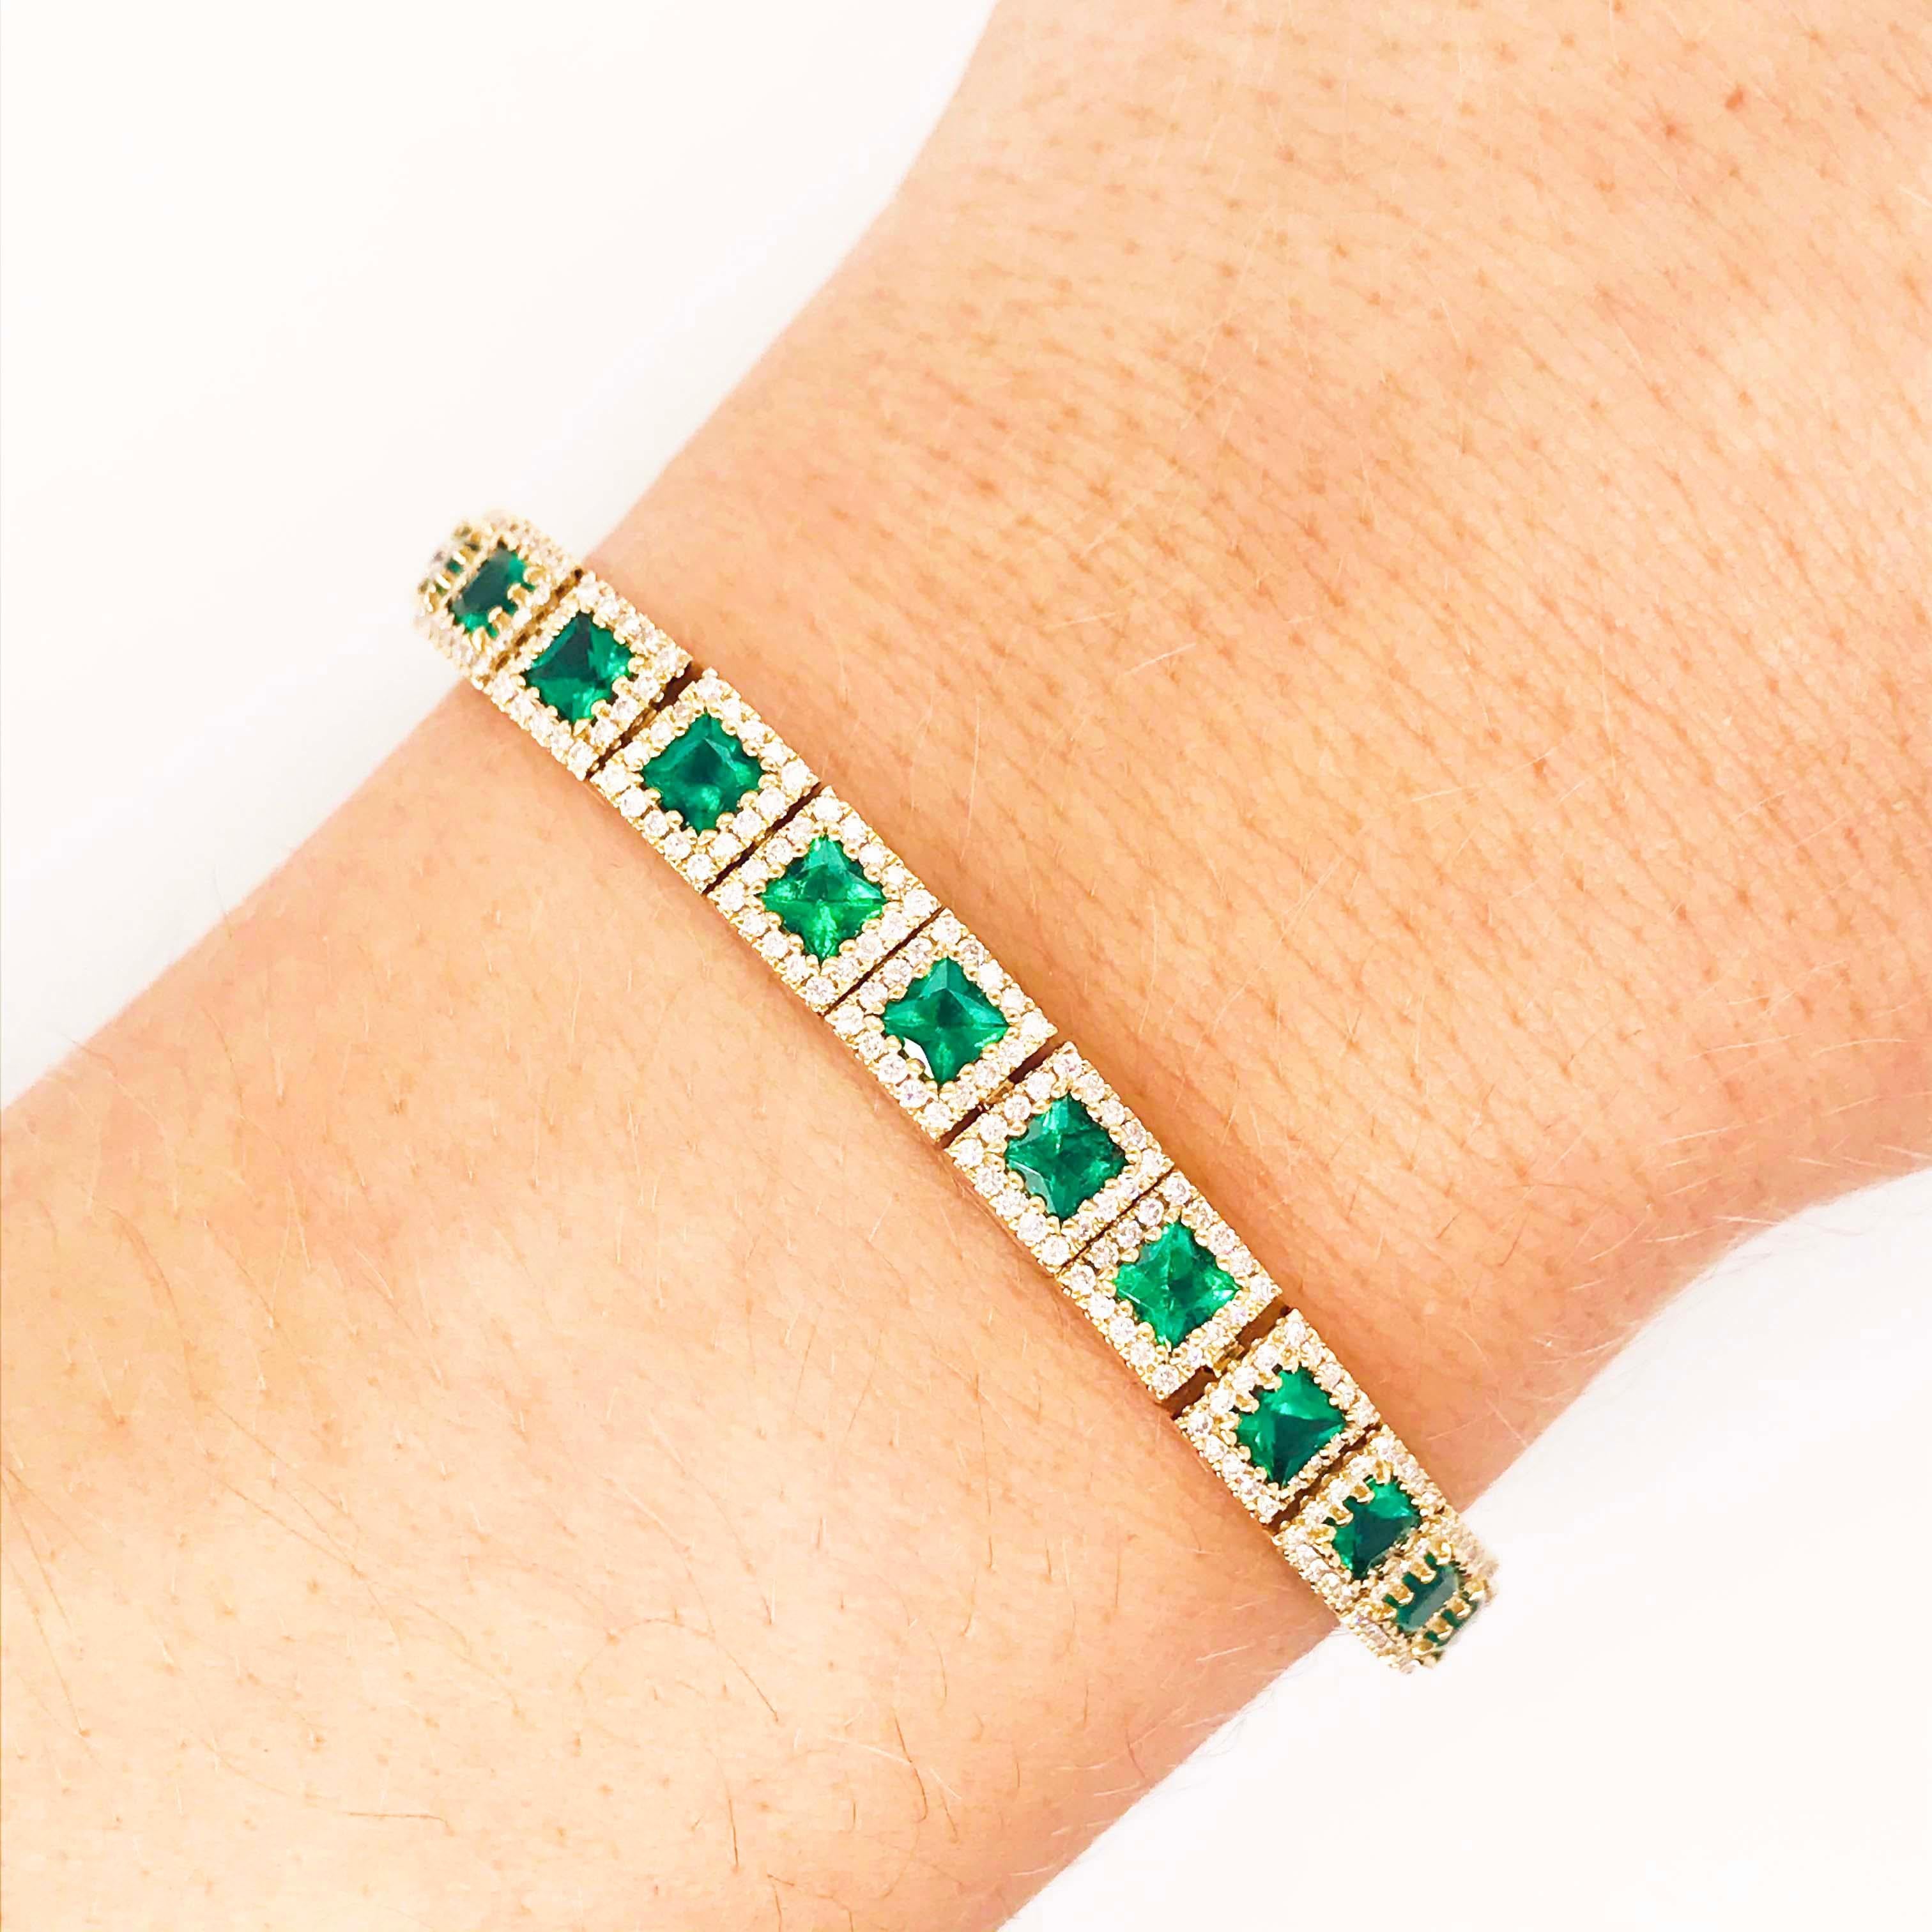 7 Karat Smaragd und Diamant Halo Tennis-Armband 14 Karat Gold Quadratische Smaragde (Zeitgenössisch)